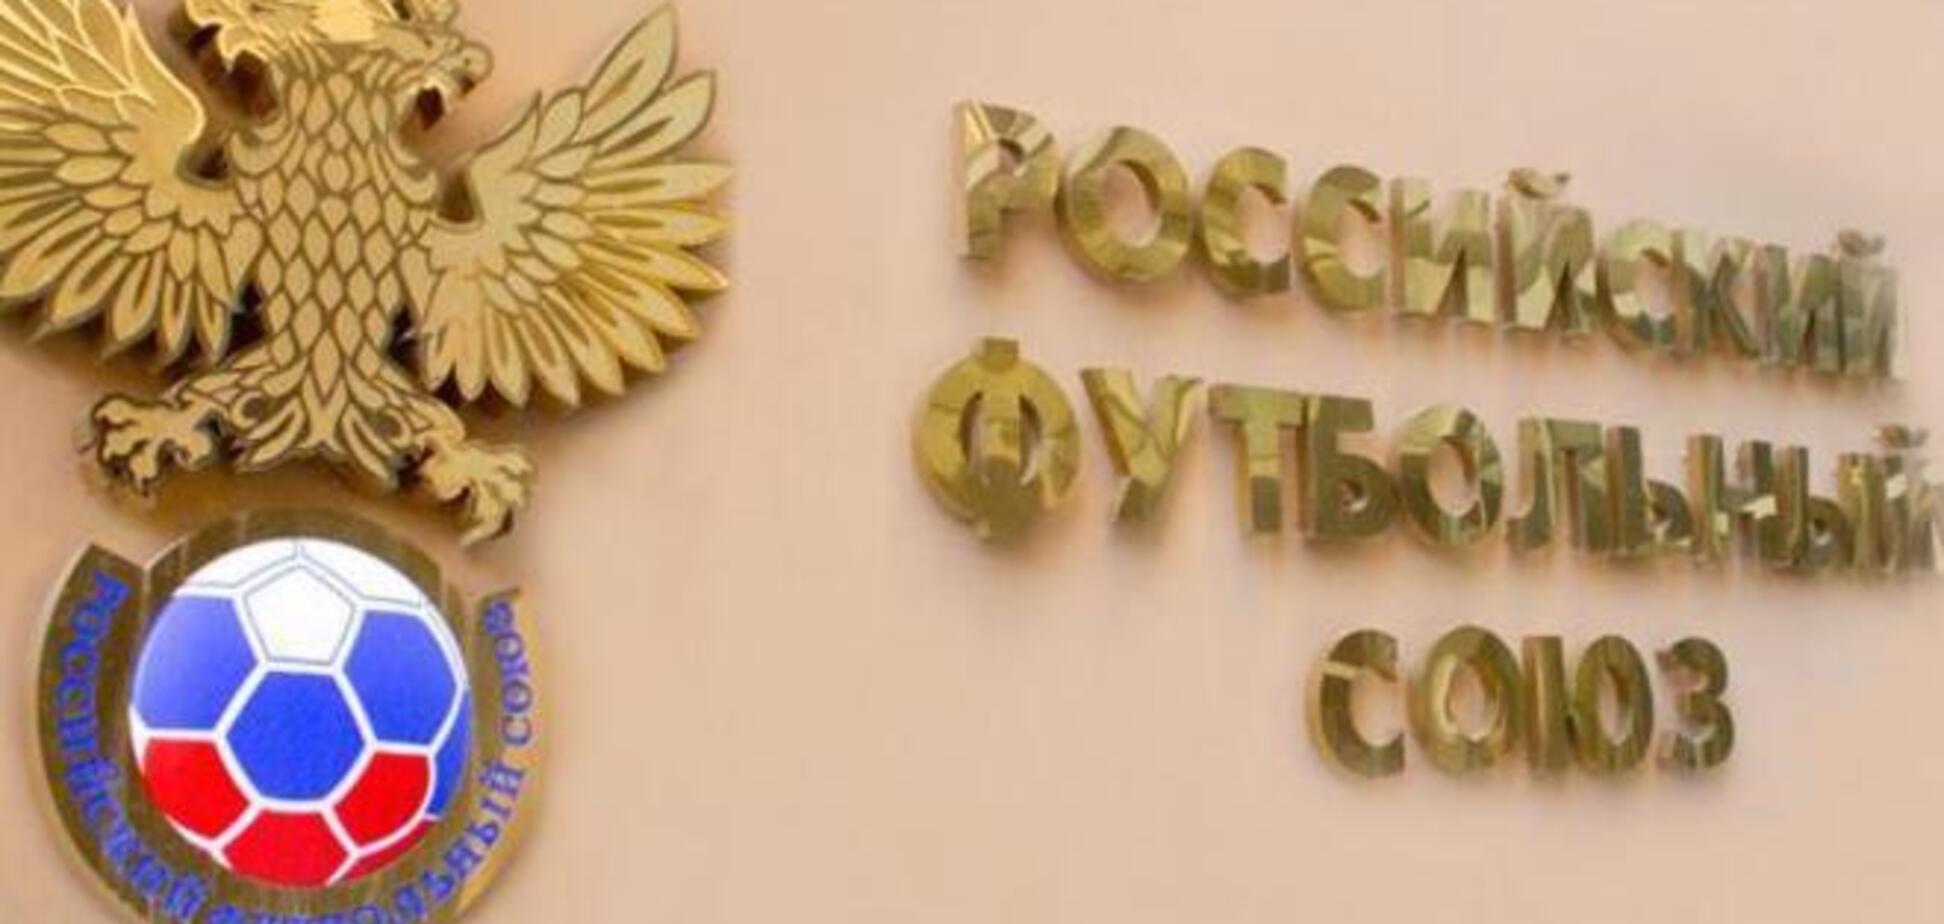 За месяц в России крымские клубы оштрафовали на 200 тыс грн